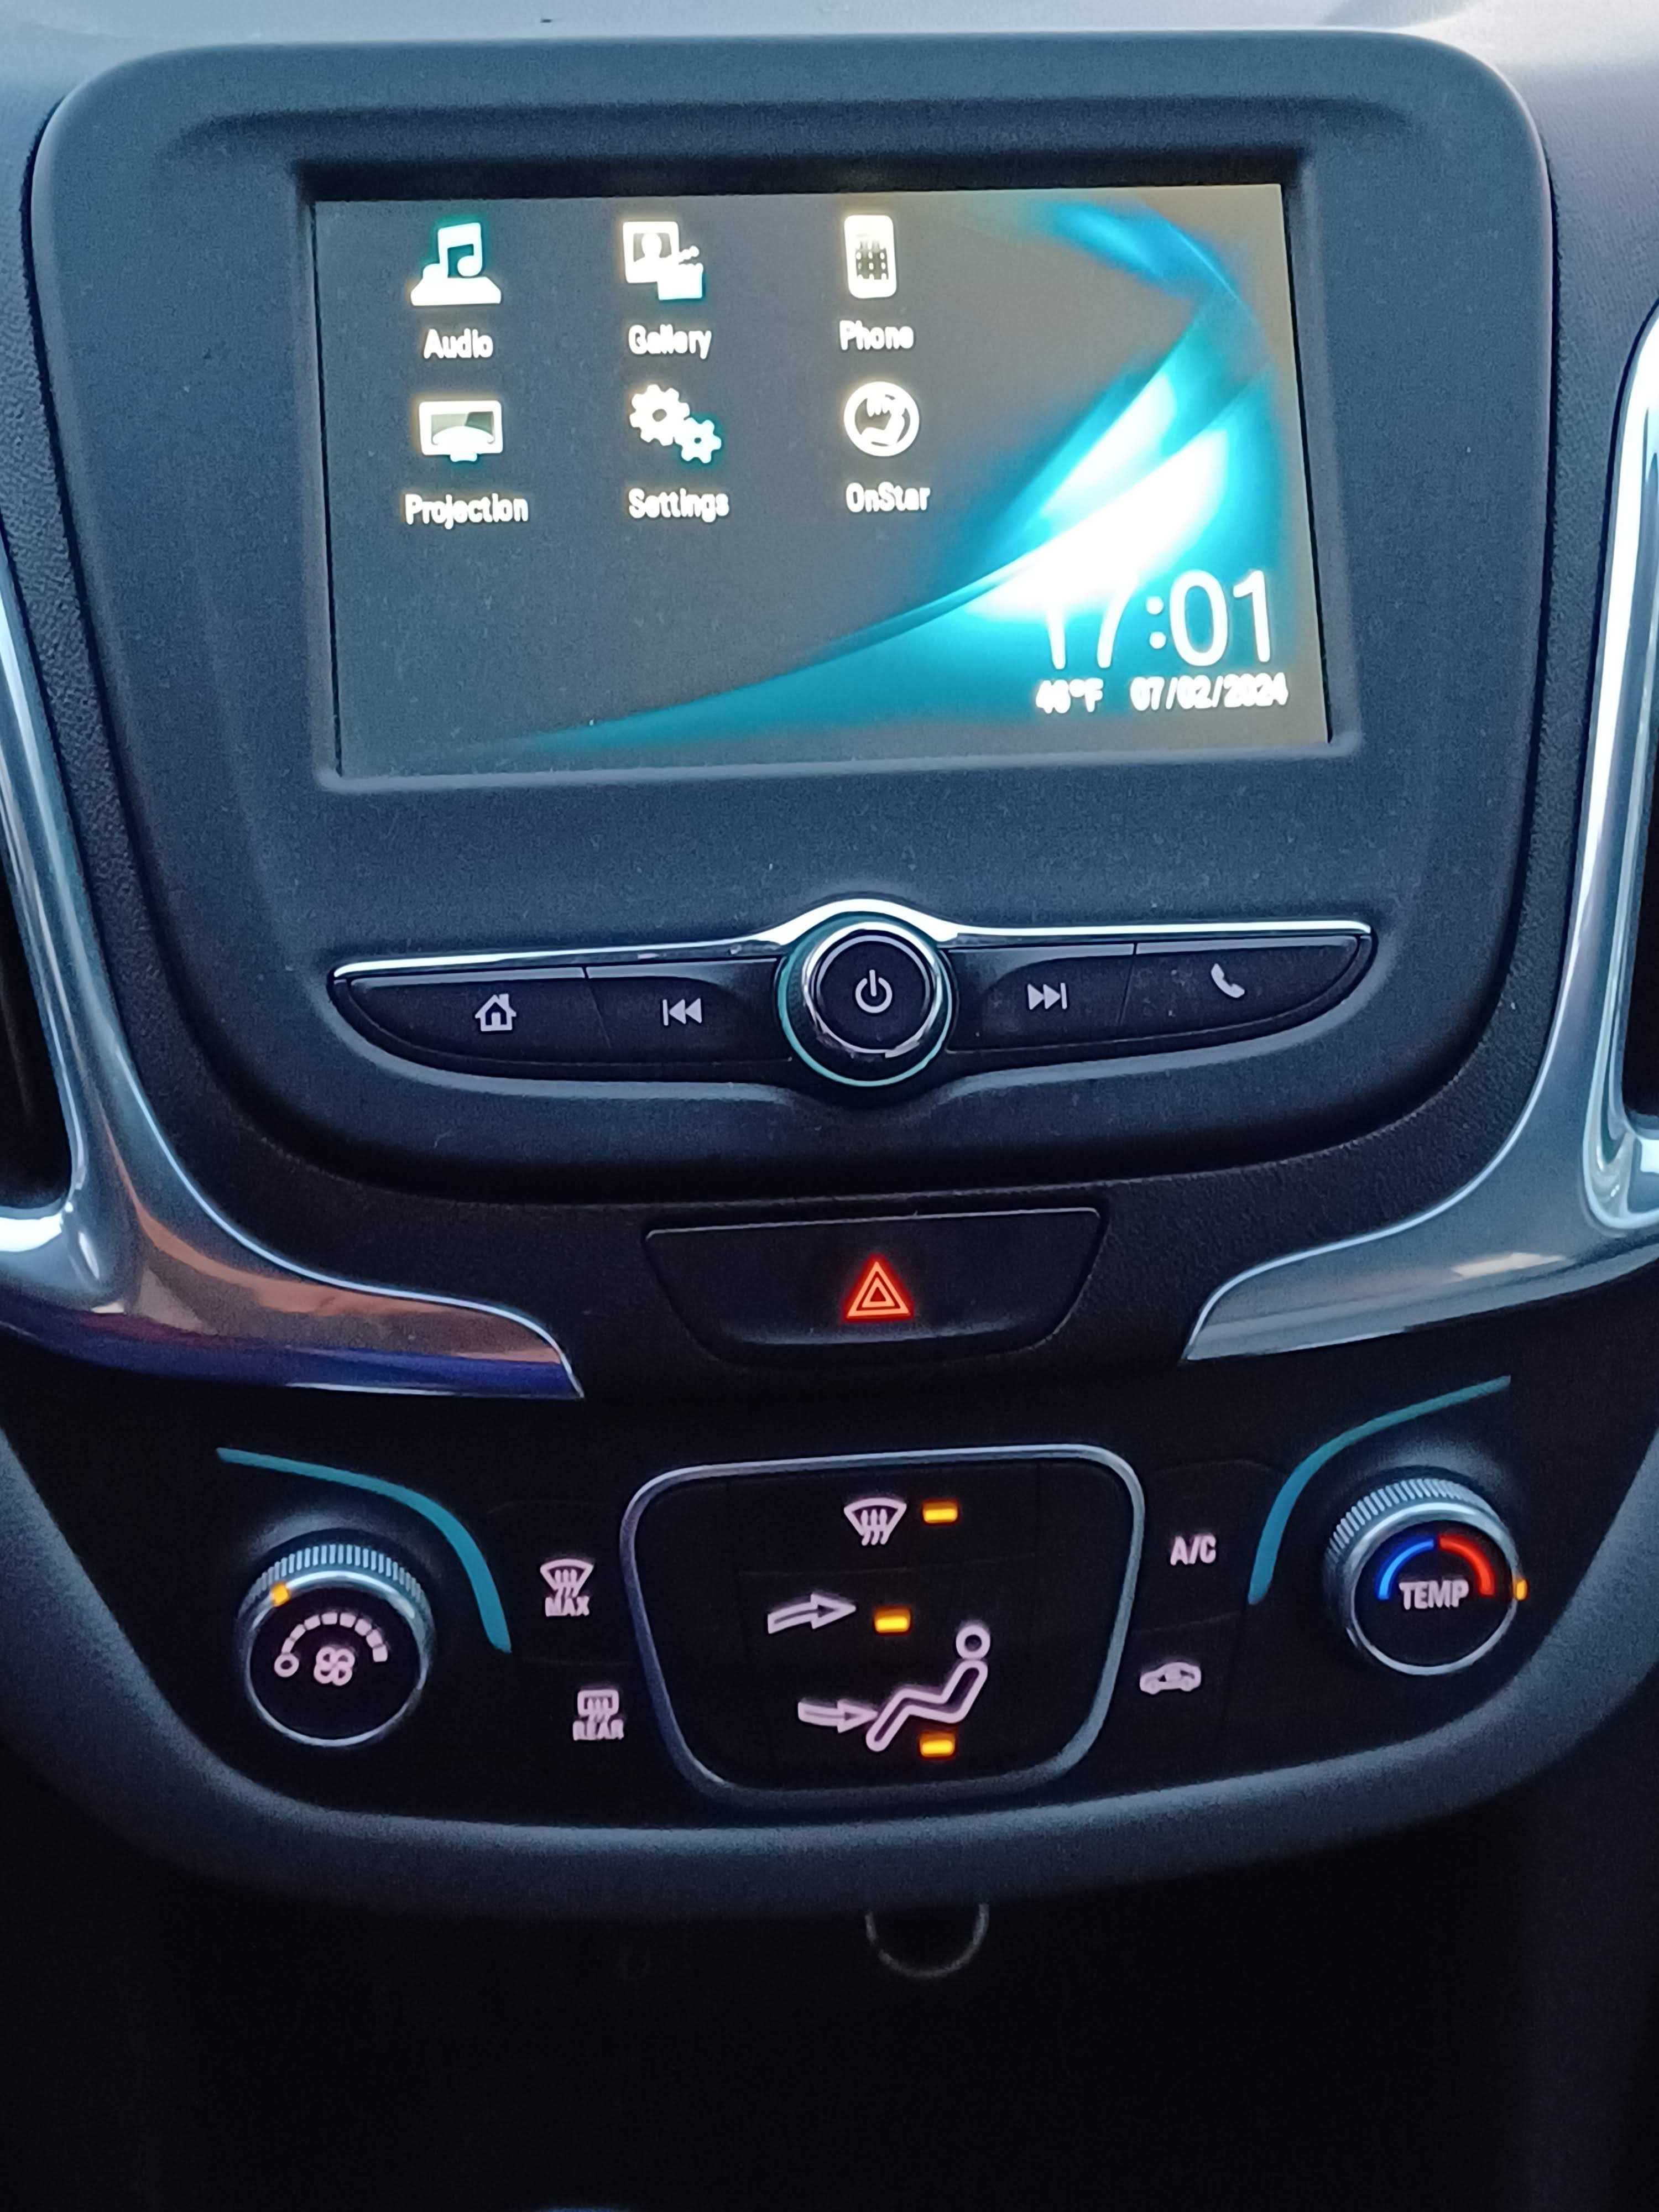 2018 Chevrolet Equinox 4Х4 подключаемый привод с 7,3л/100км